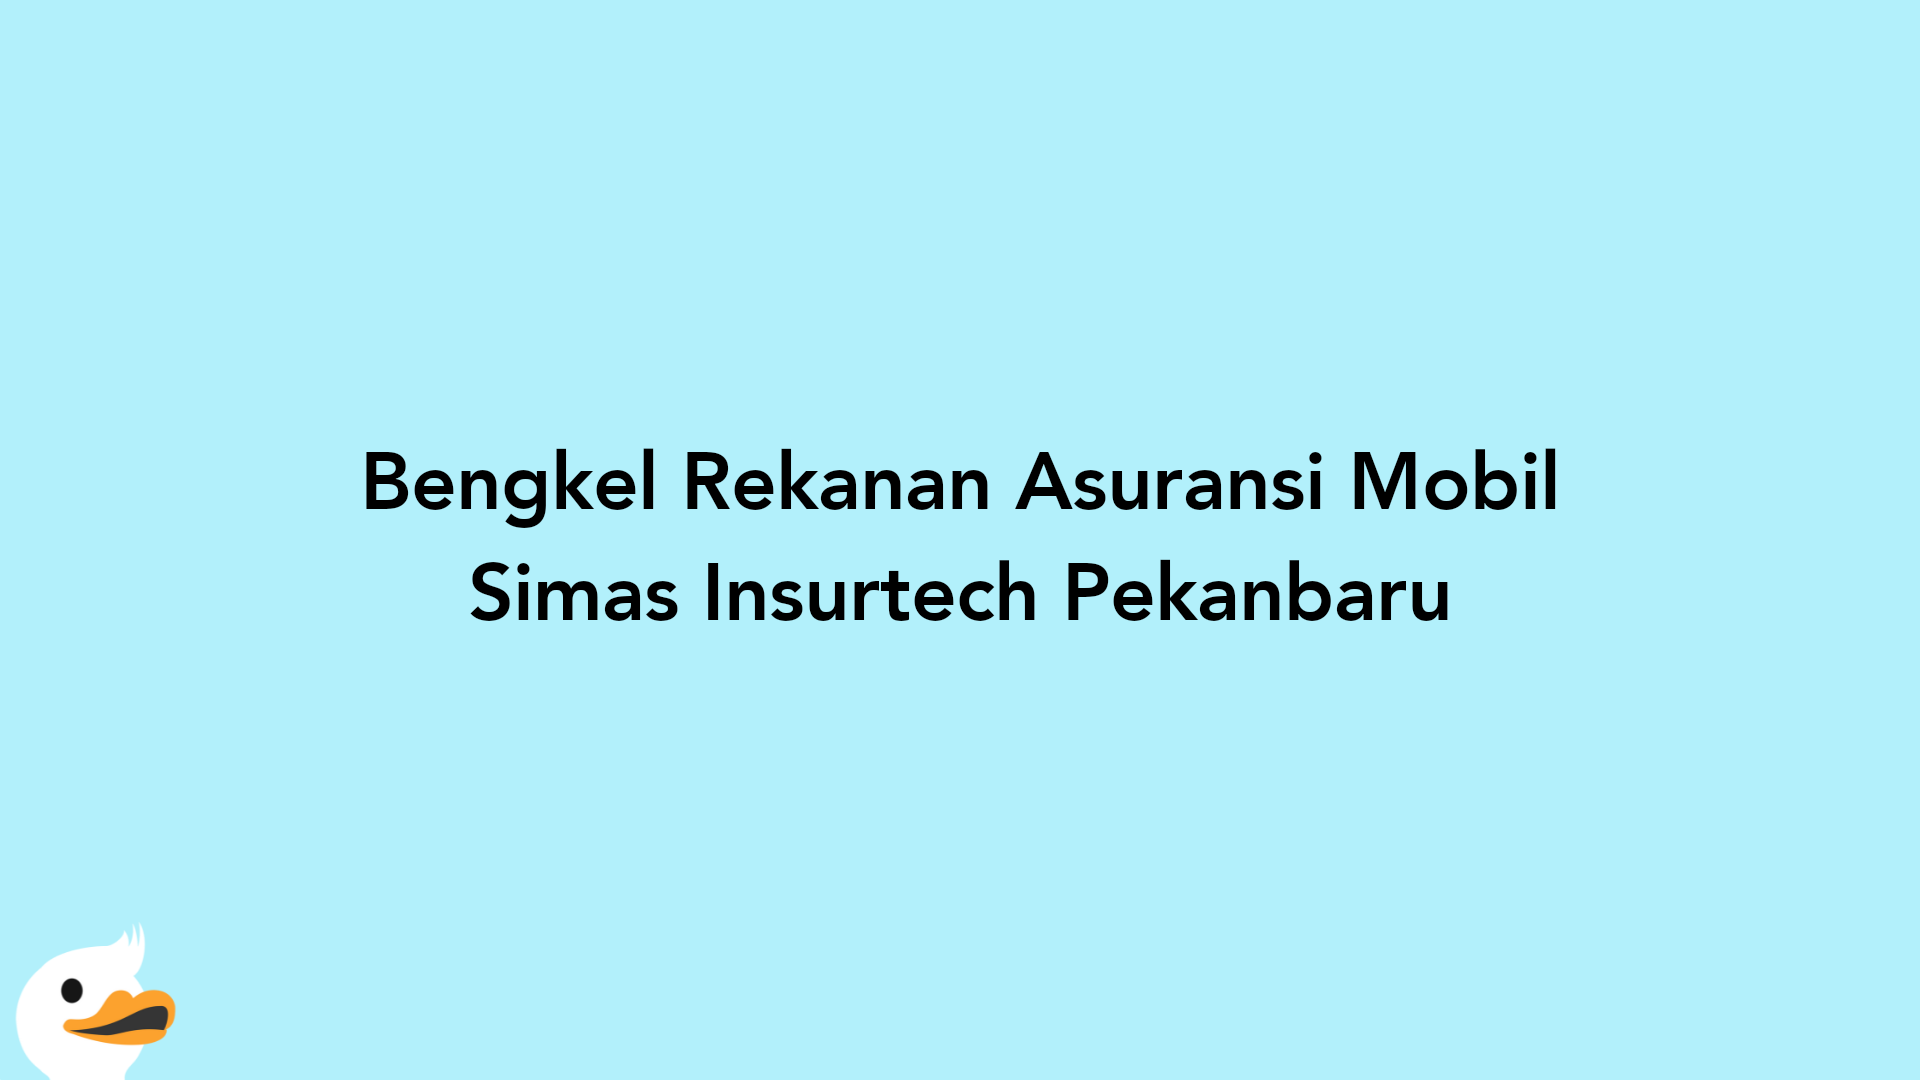 Bengkel Rekanan Asuransi Mobil Simas Insurtech Pekanbaru